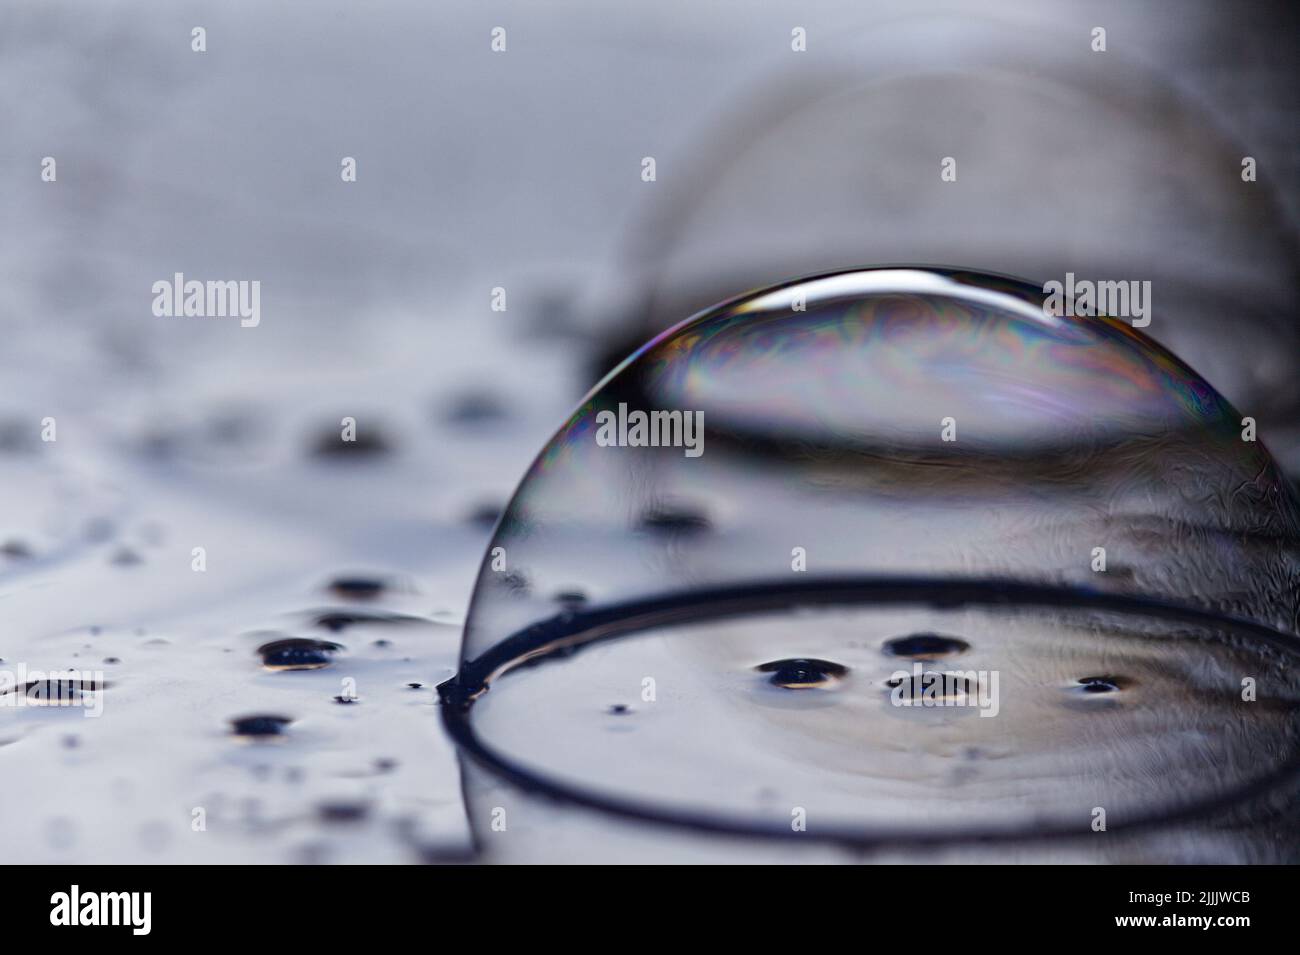 Fotografie von Blasen auf einer flachen Oberfläche; abstrakte Formen, Blase, Flüssigkeit, für die Verwendung als Computer-Hintergrund, Telefon Hintergrund, oder in einem digitalen Thema. Stockfoto